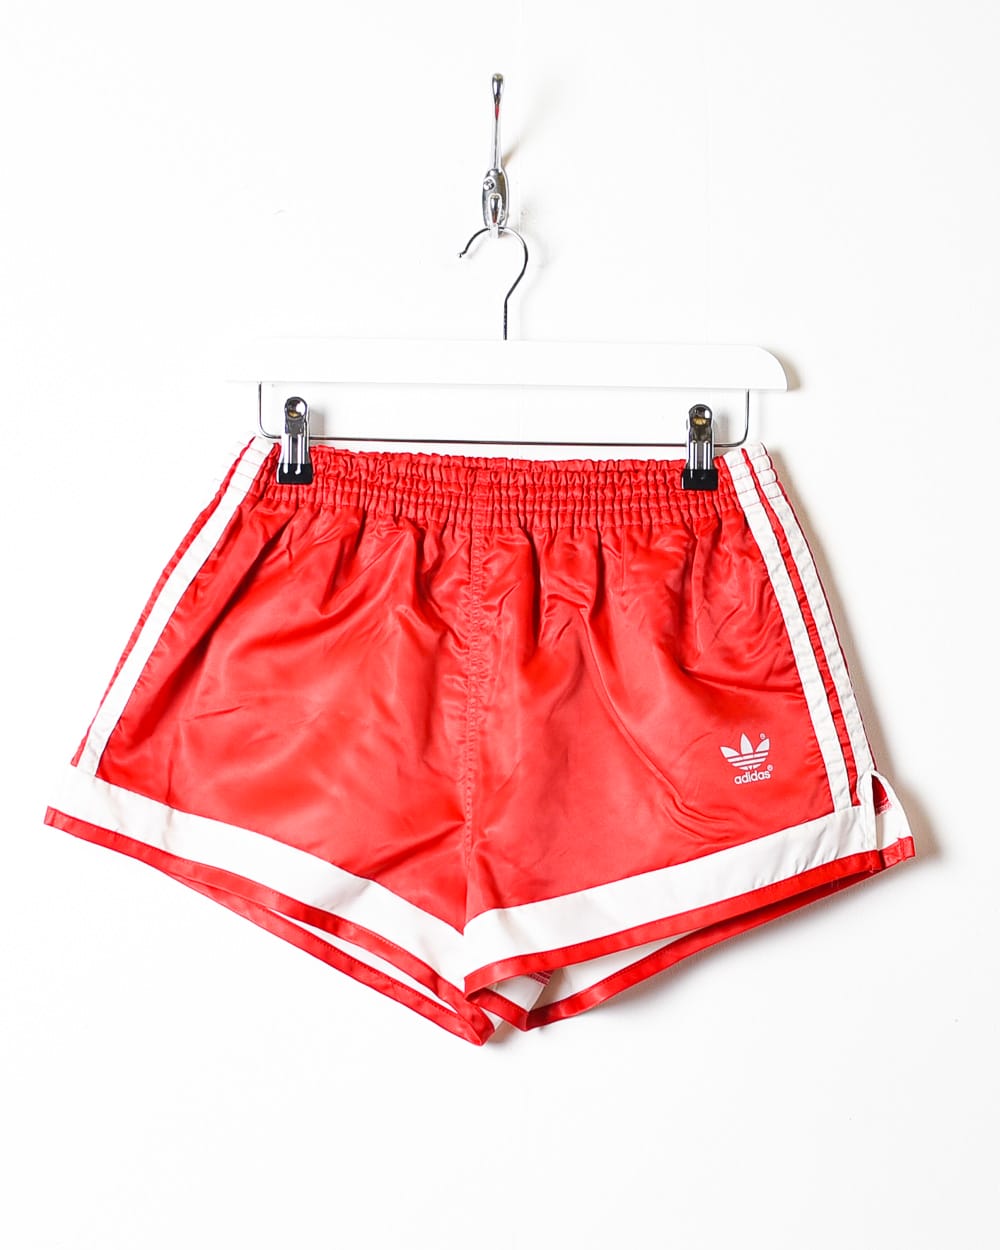 Red Adidas Short Shorts - Small